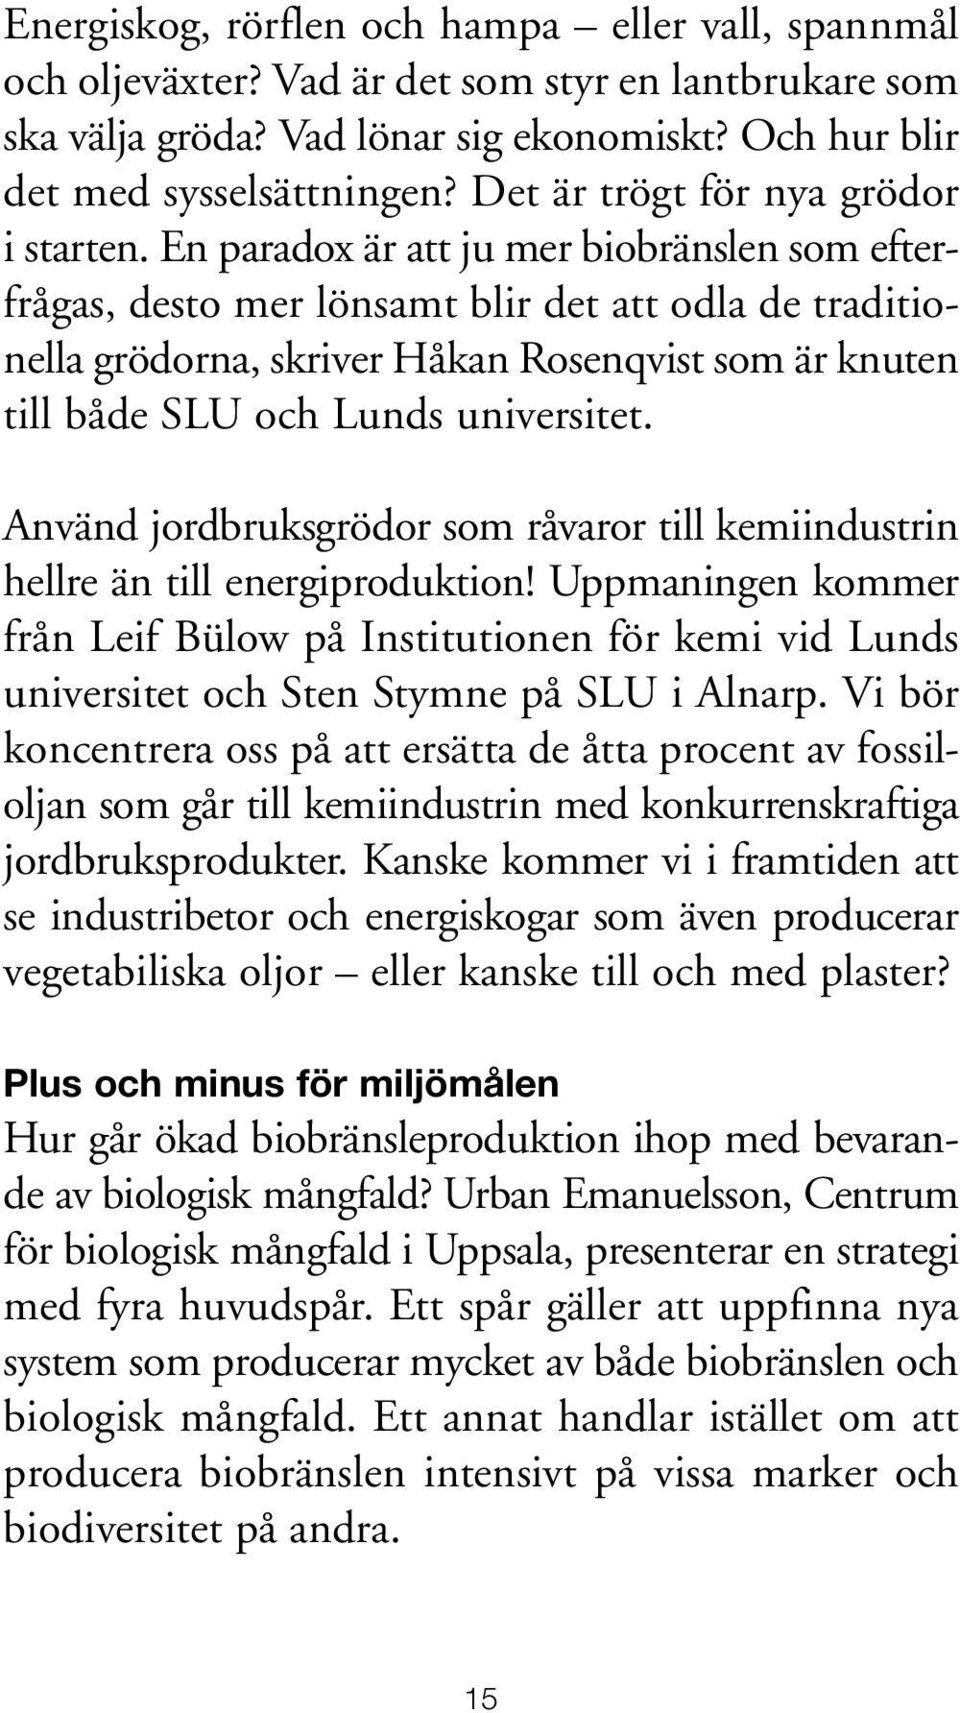 En paradox är att ju mer biobränslen som efterfrågas, desto mer lönsamt blir det att odla de traditionella grödorna, skriver Håkan Rosenqvist som är knuten till både SLU och Lunds universitet.